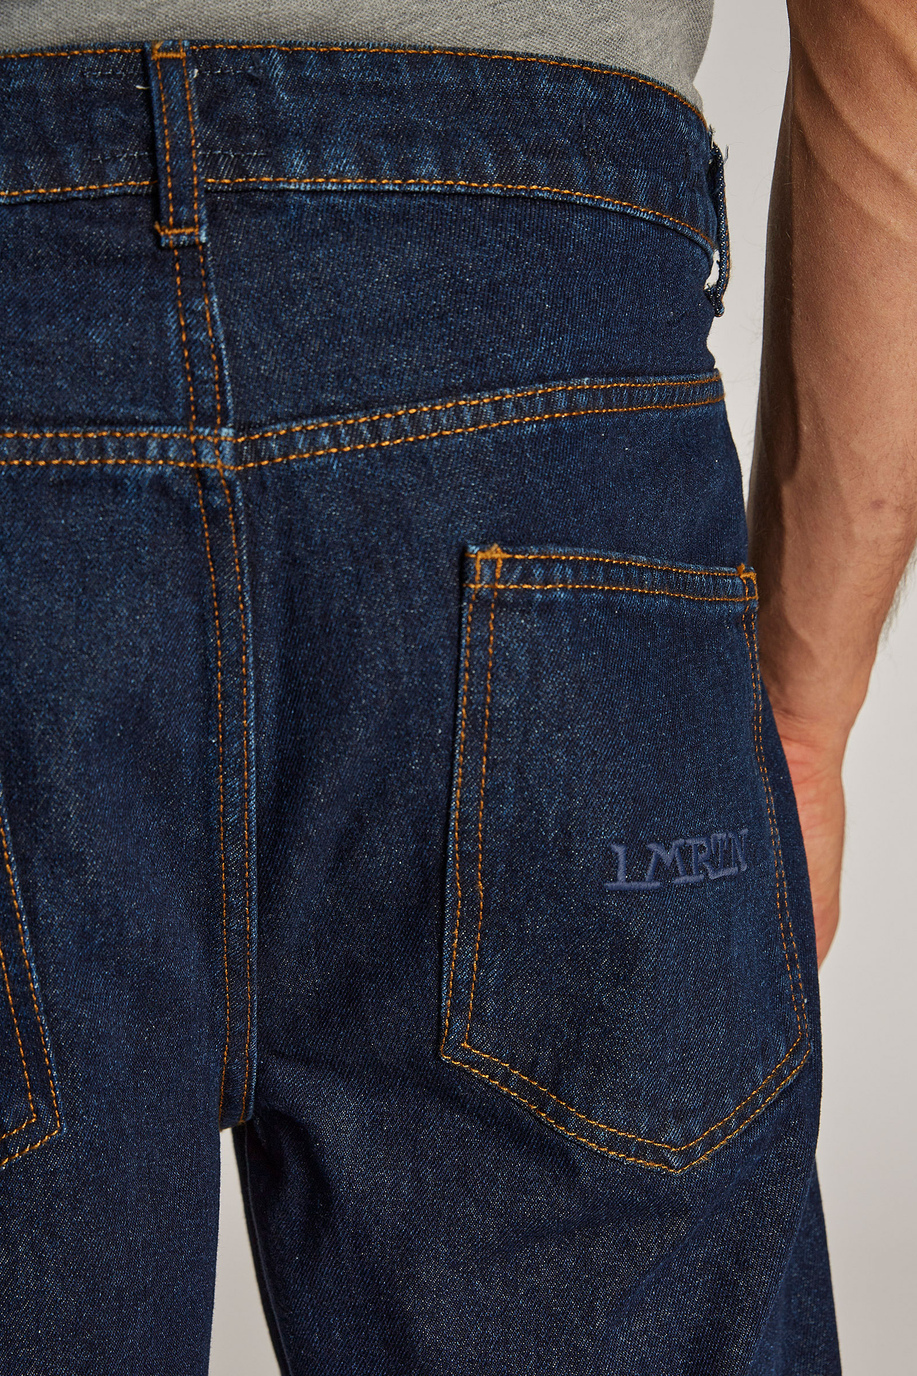 Men's comfort-fit 100% cotton jeans